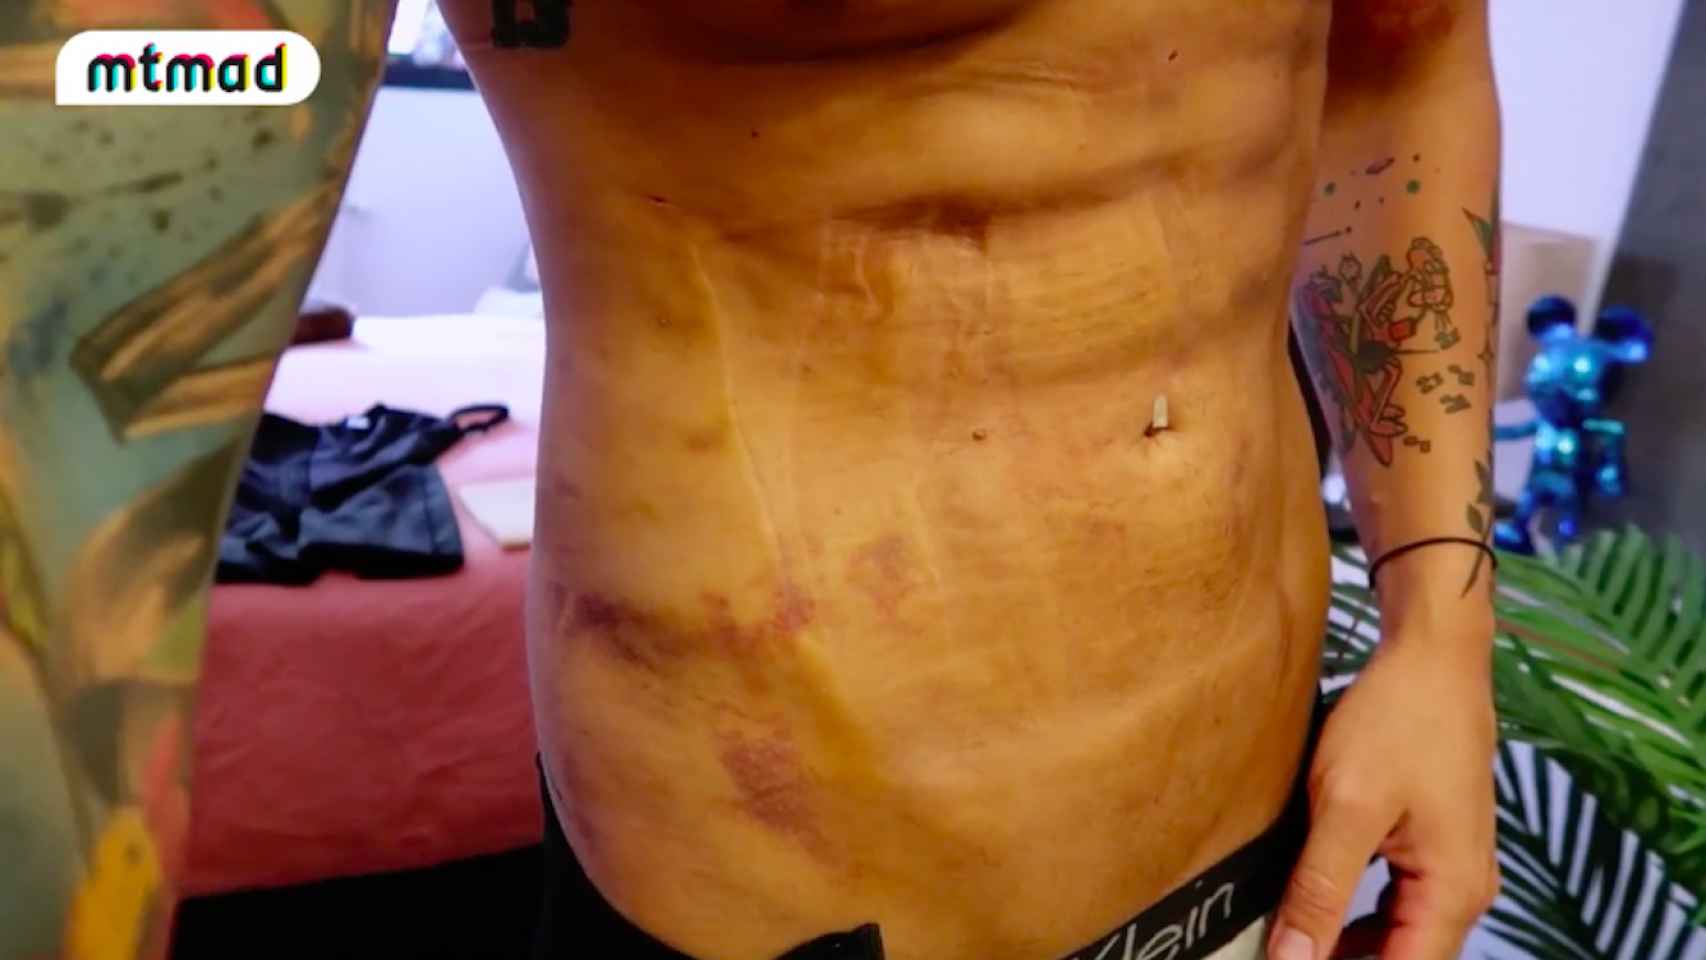 Así mostró Diego Matamoros su abdomen tras someterse a una lipo este verano.